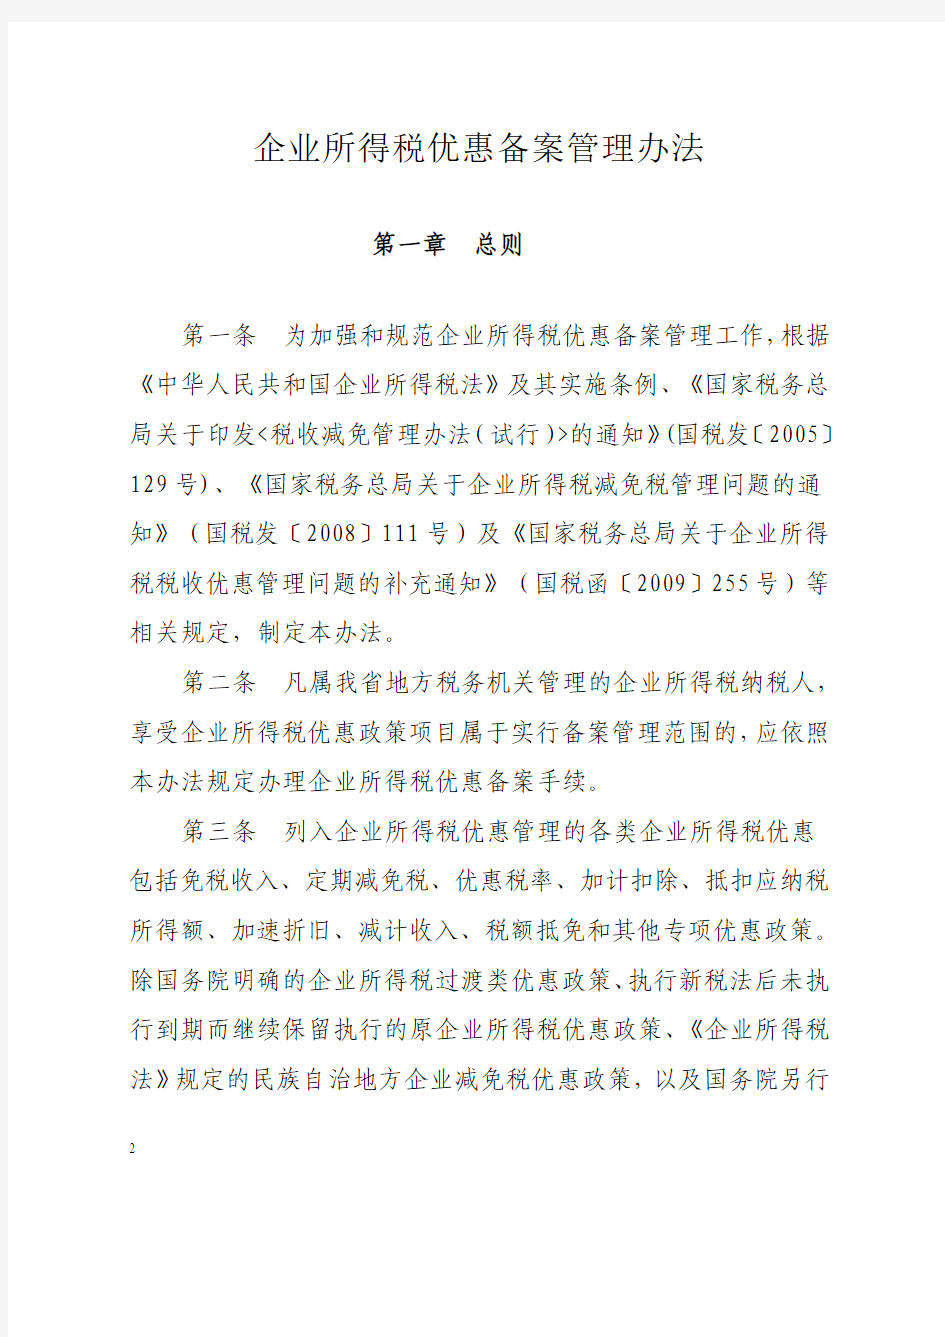 川地税2012年1号公告：四川省地方税务局关于发布《企业所得税优惠备案管理办法》的公告